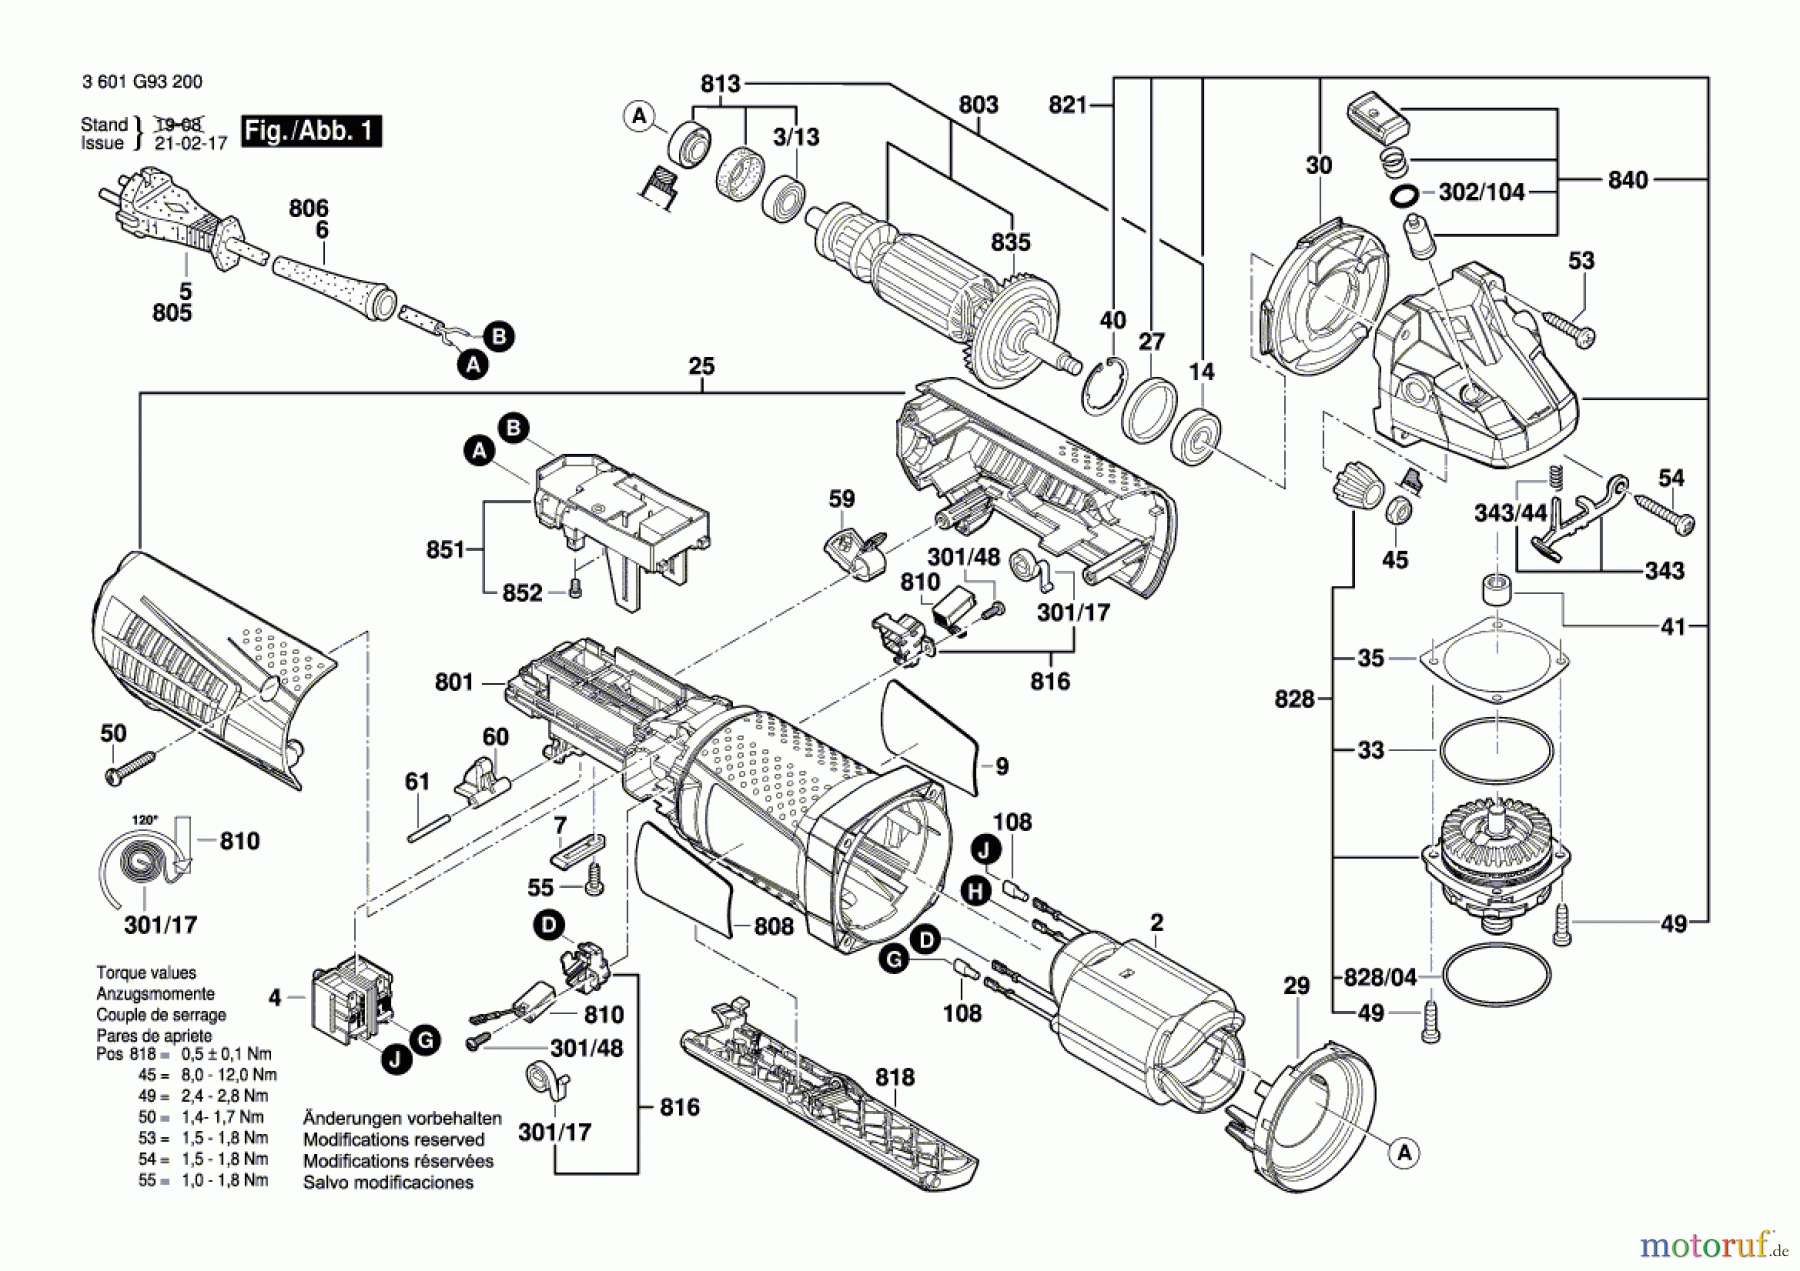  Bosch Werkzeug Winkelschleifer GWS 12-125 CIP Seite 1